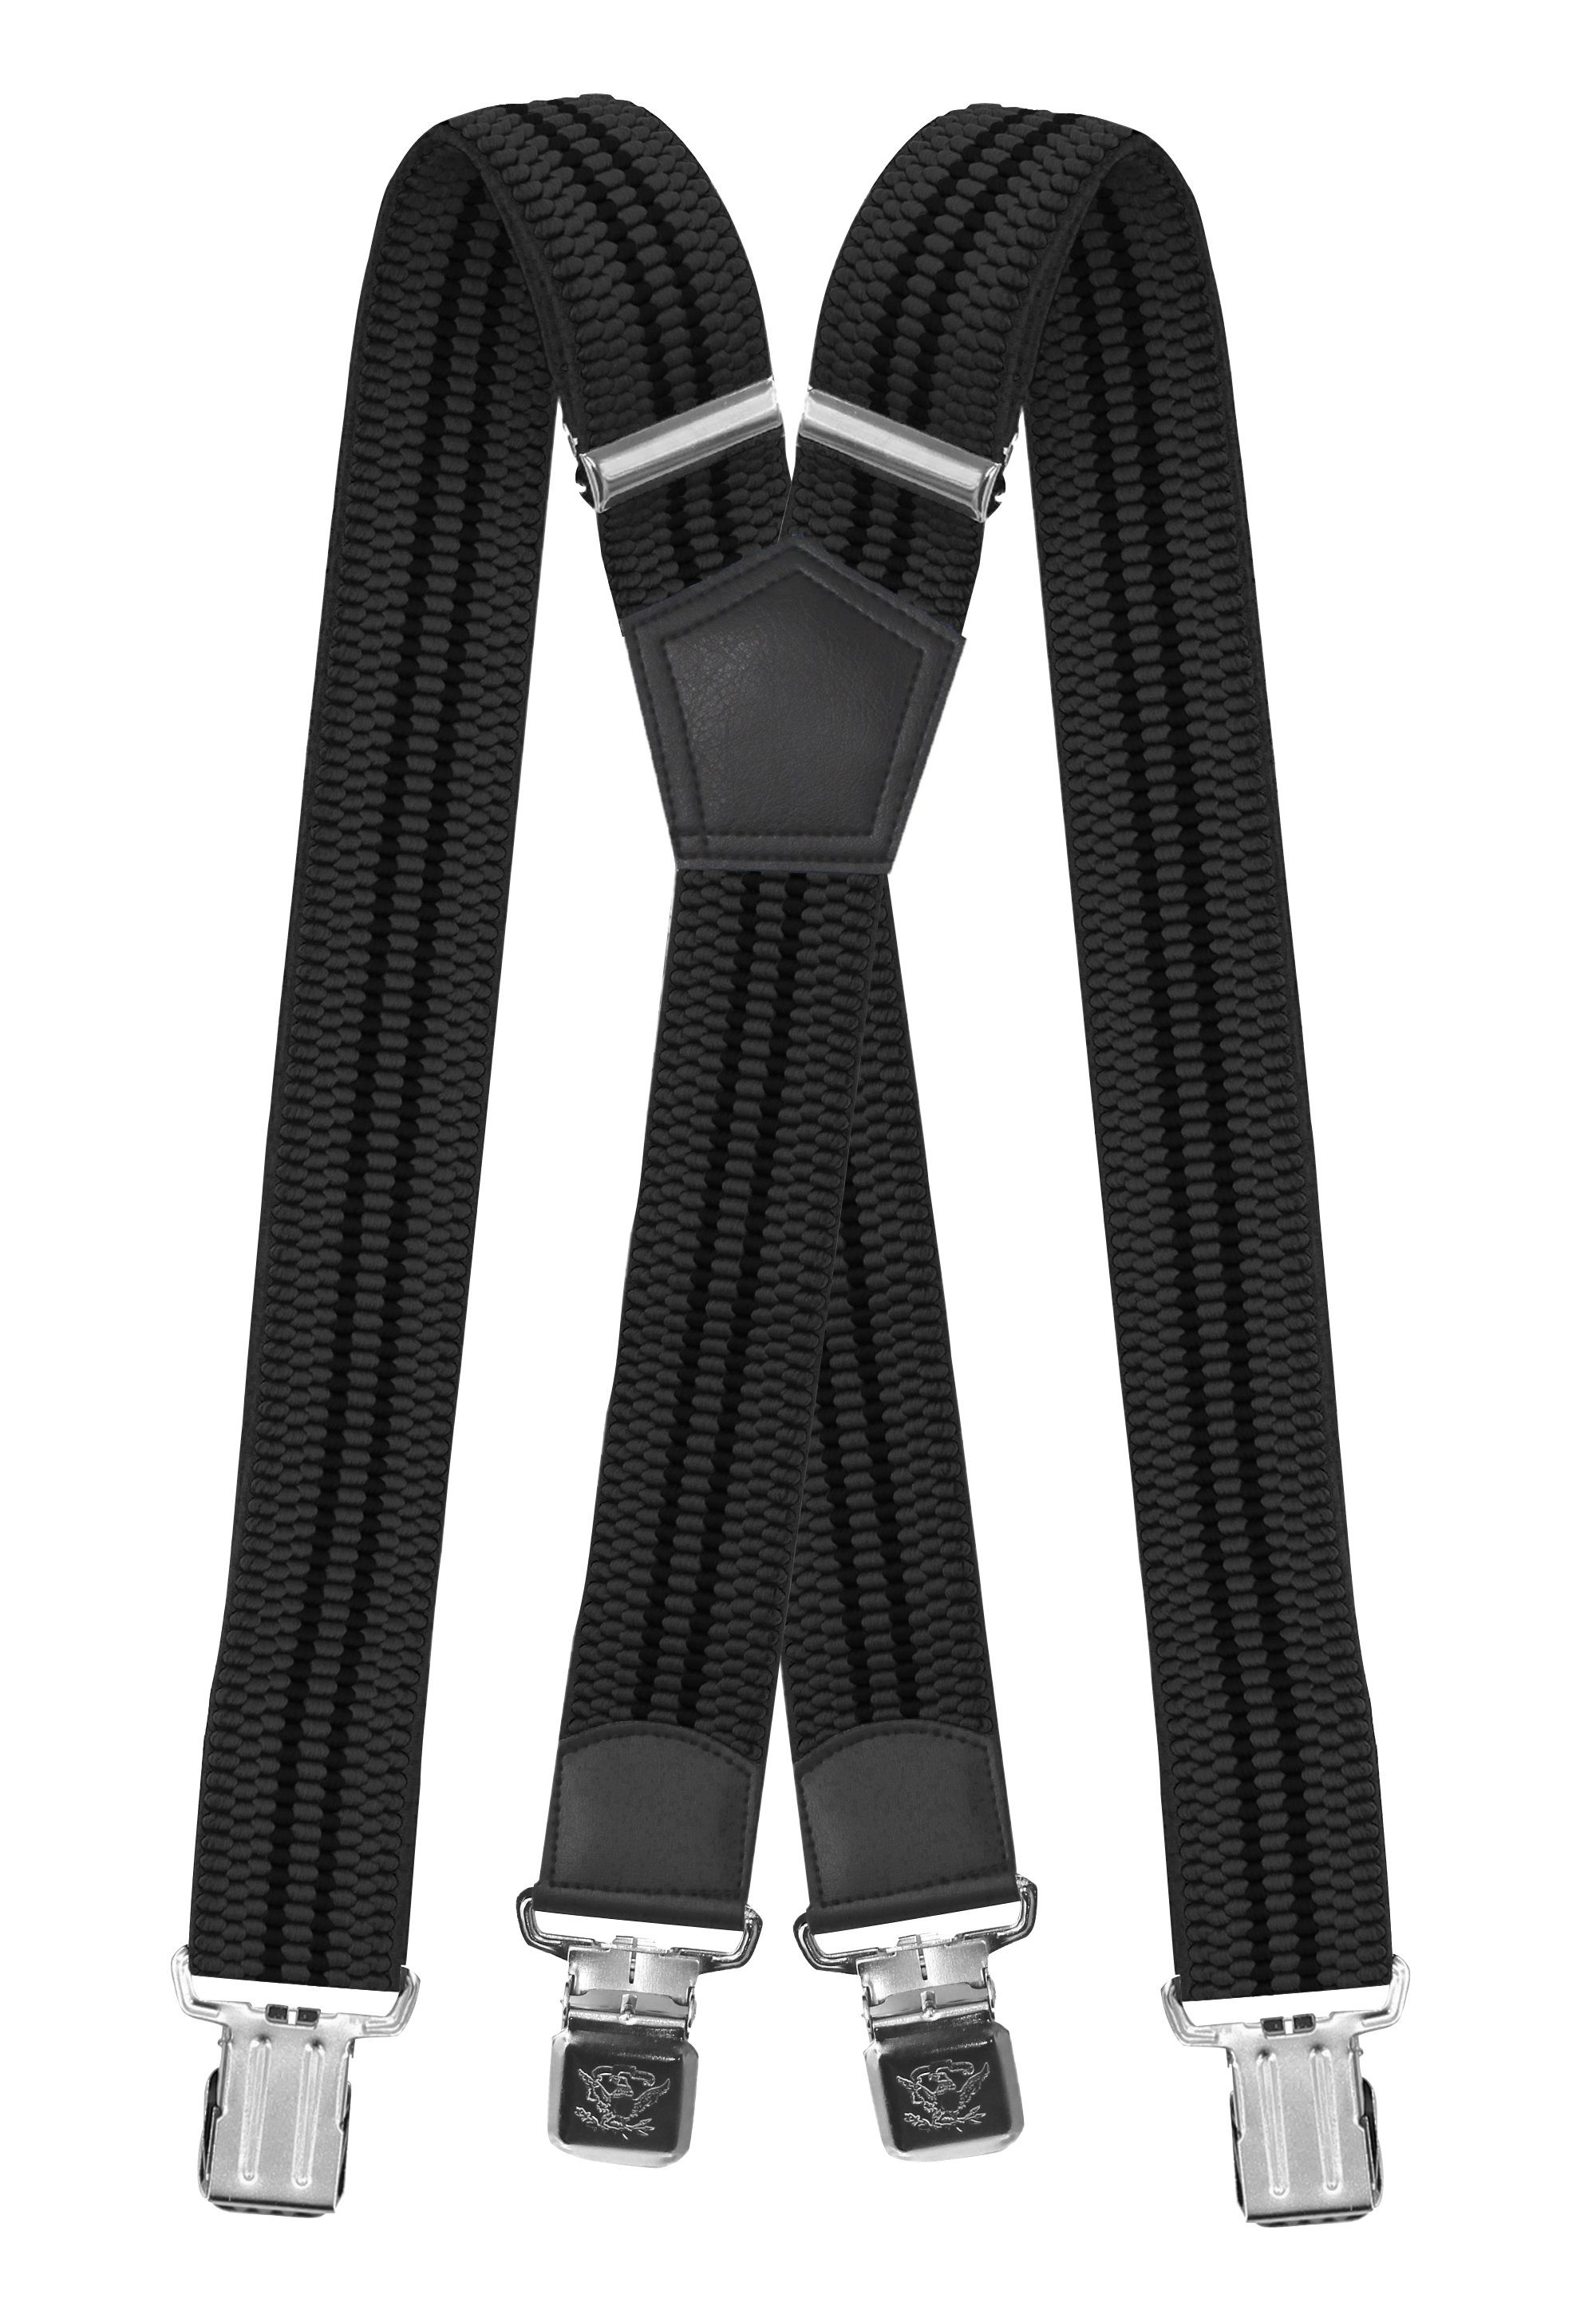 schwarzen Grau Streifen) Hosenträger (schwarze mit Grau Fabio Streifen verstellbar Clipverschluss, extra starken 4cm Farini mit Breites X-Design